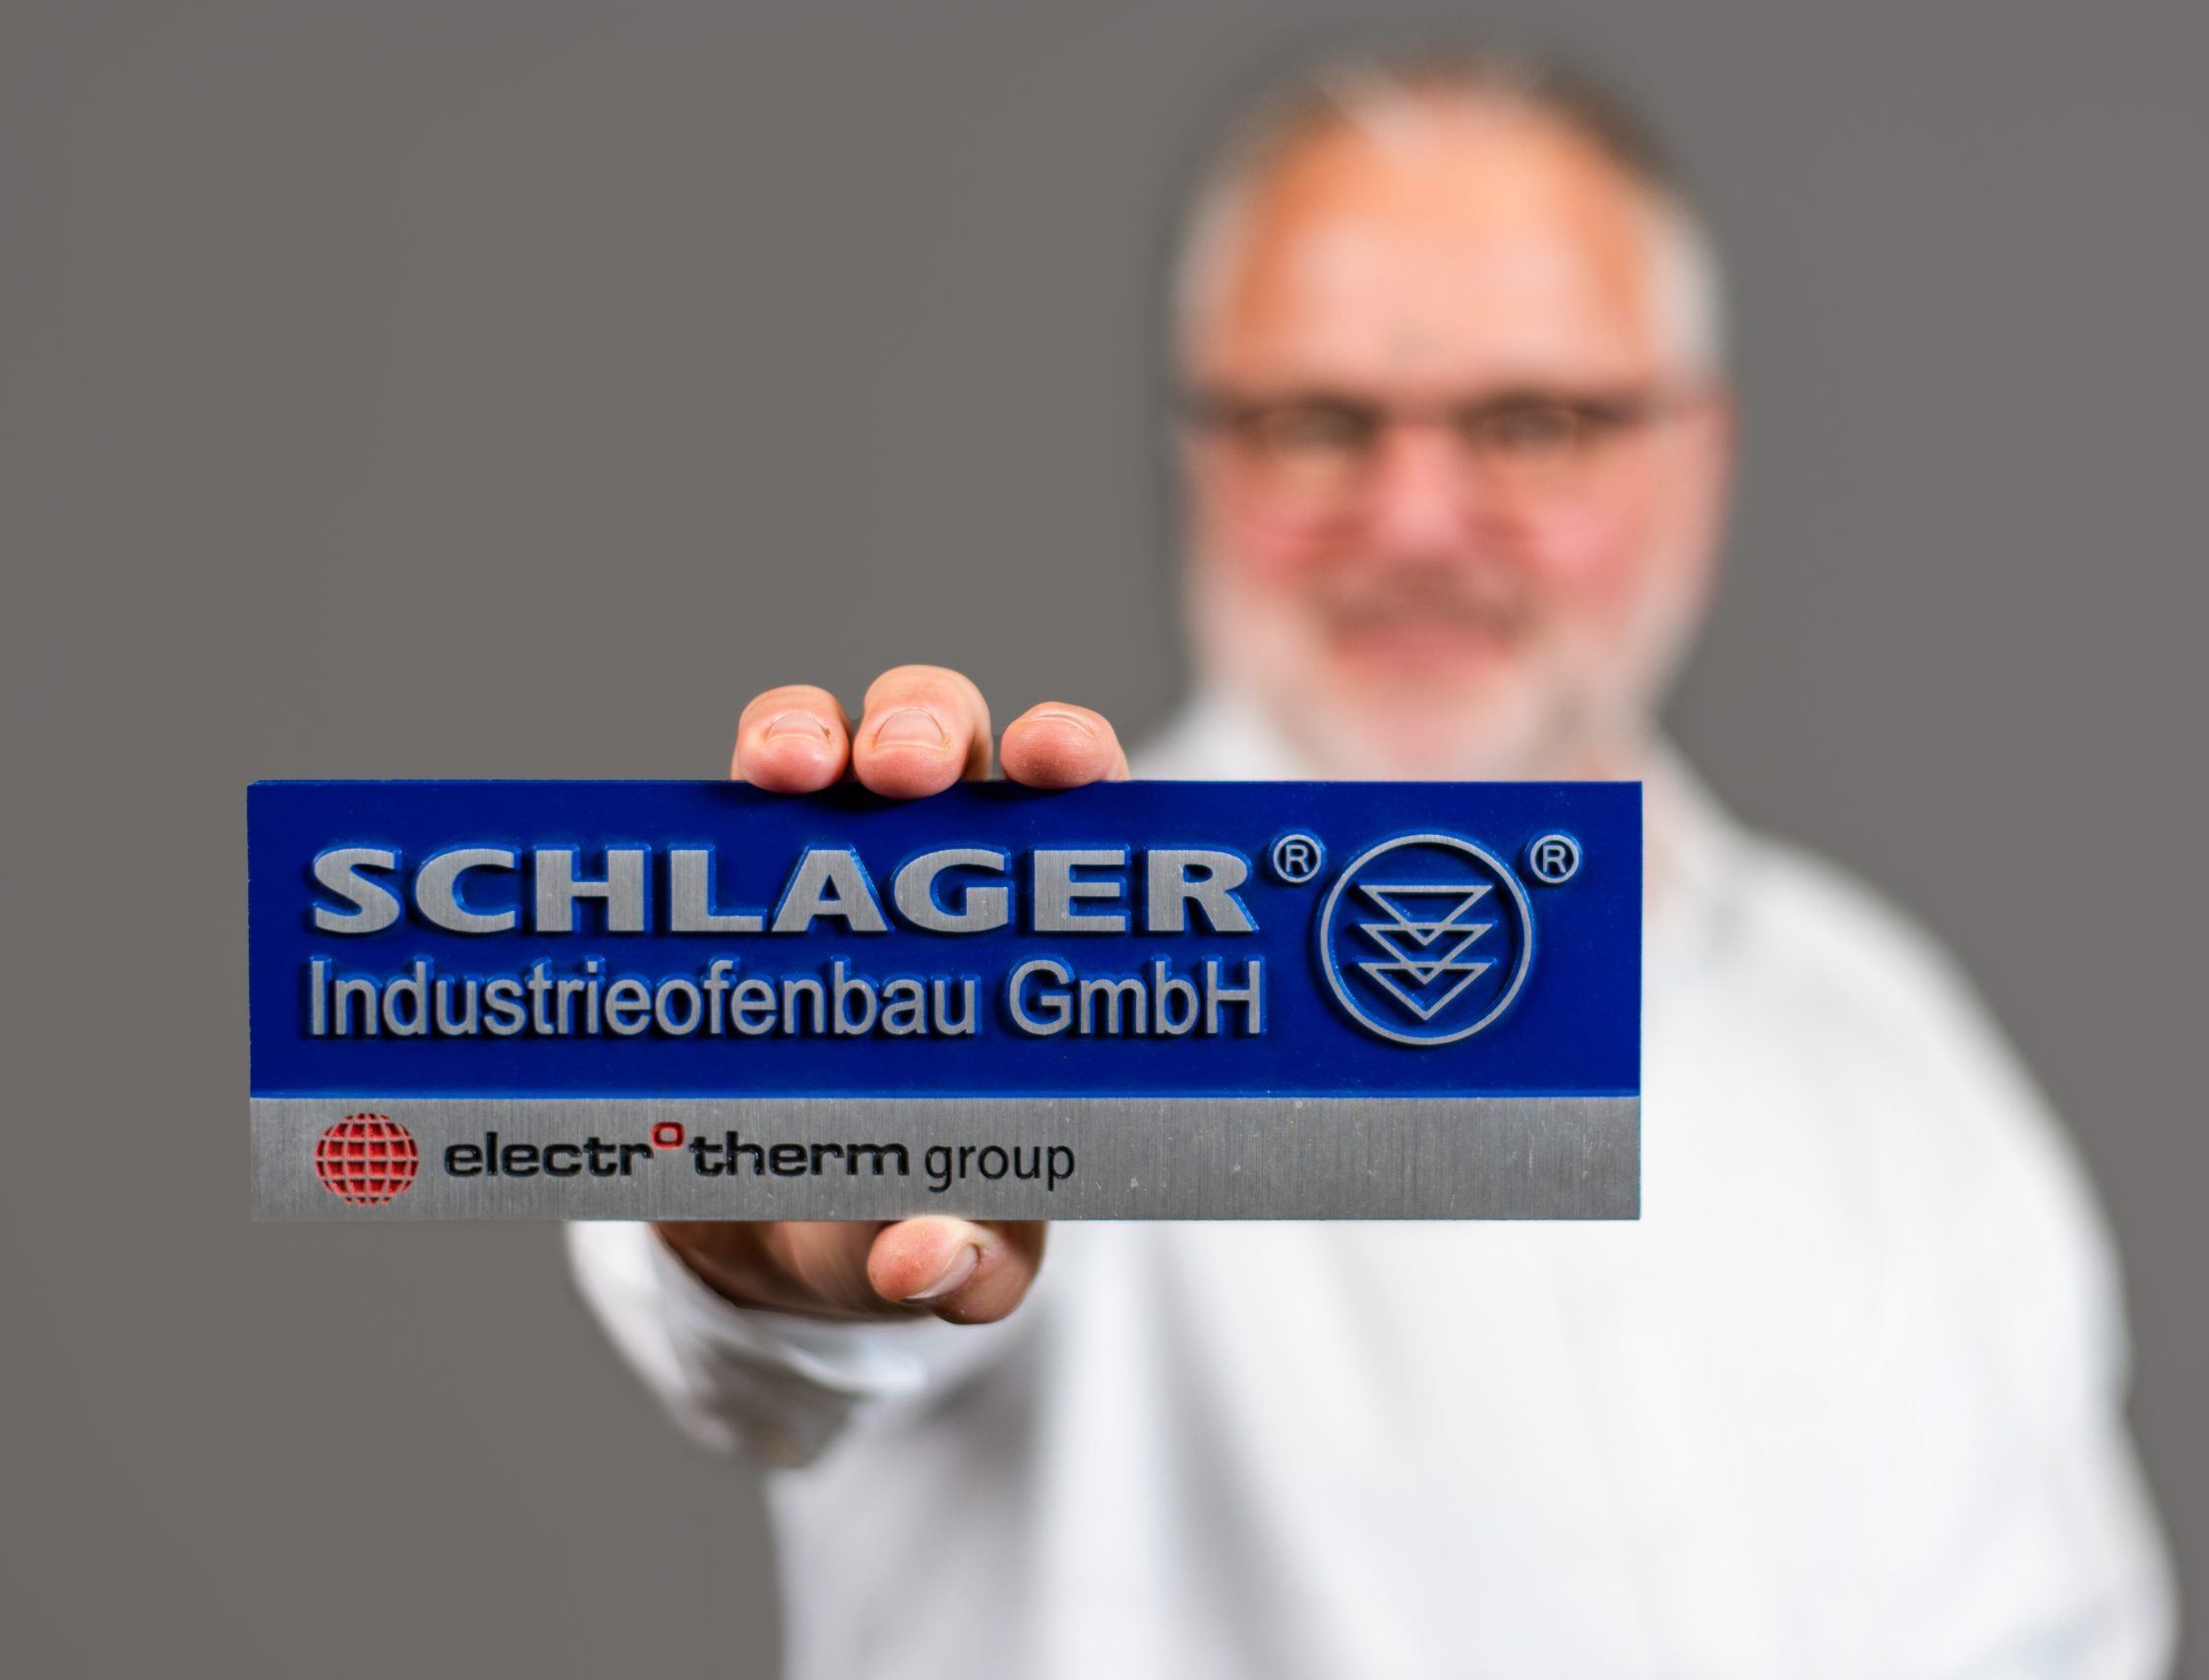 Company SCHLAGER Industrieofenbau GmbH